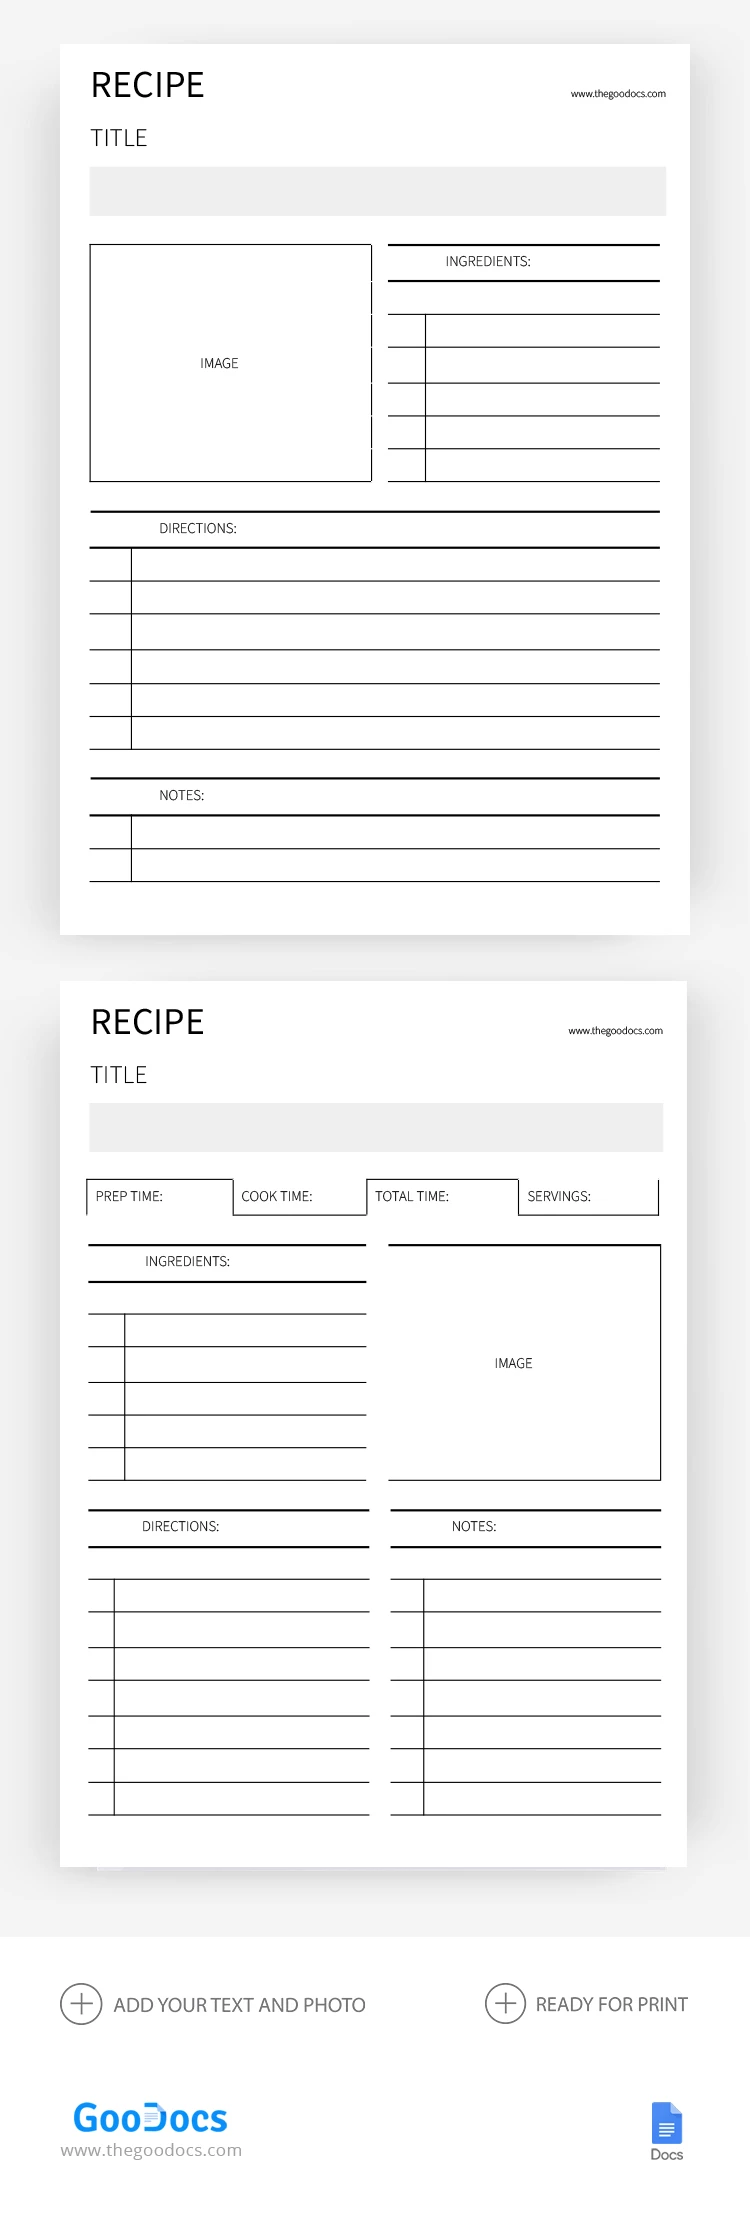 Livre de recettes vierge - free Google Docs Template - 10068574